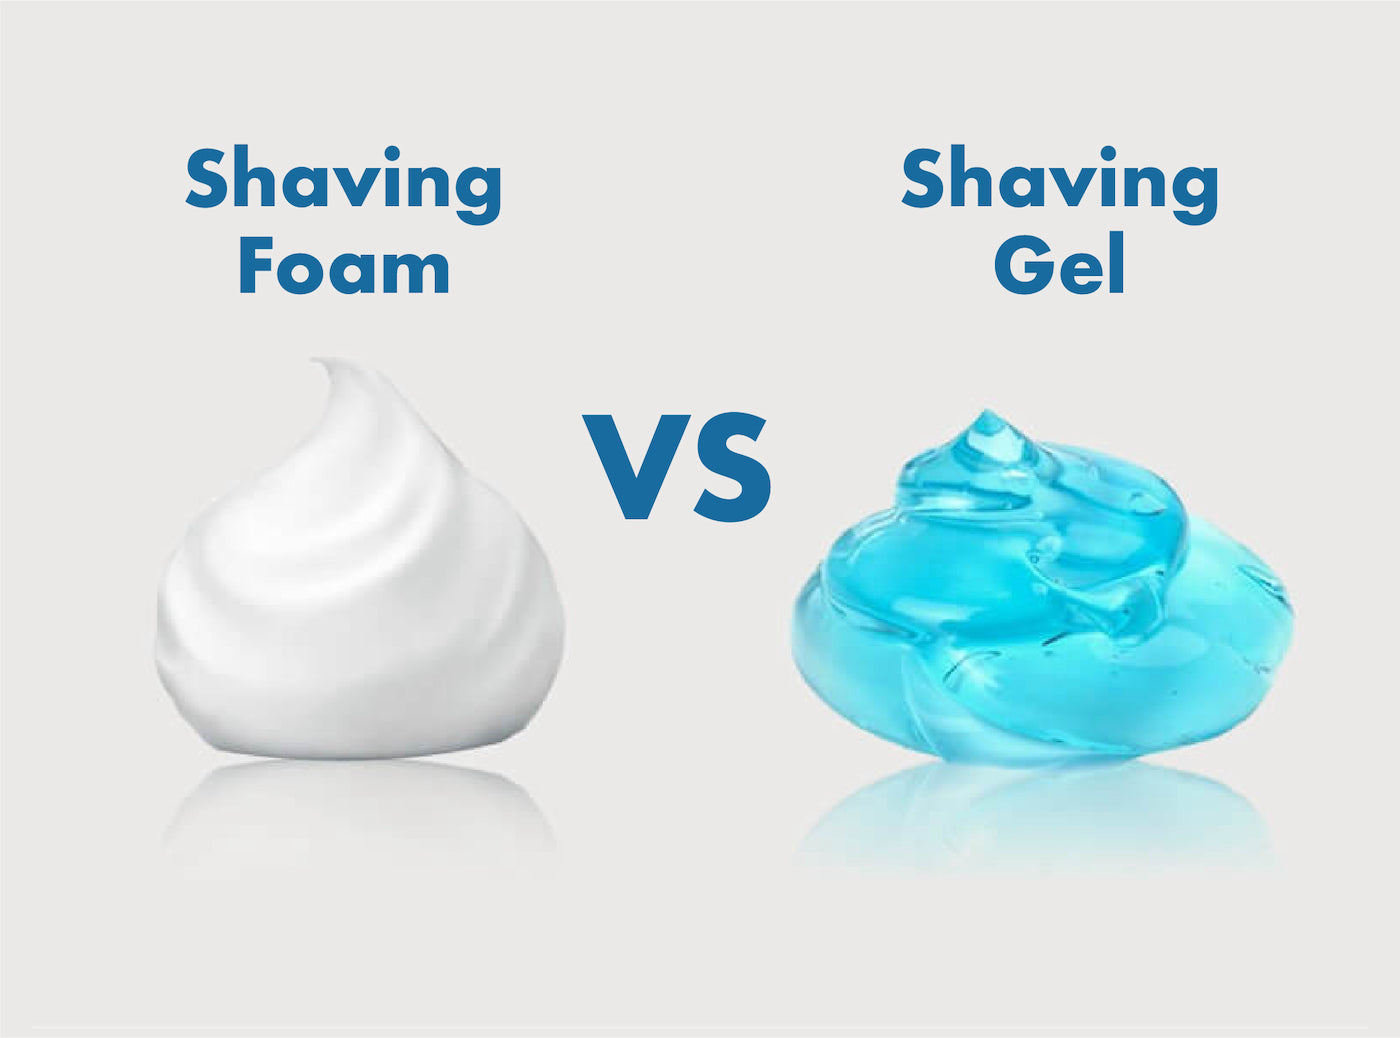 Shaving foam VS Shaving gel